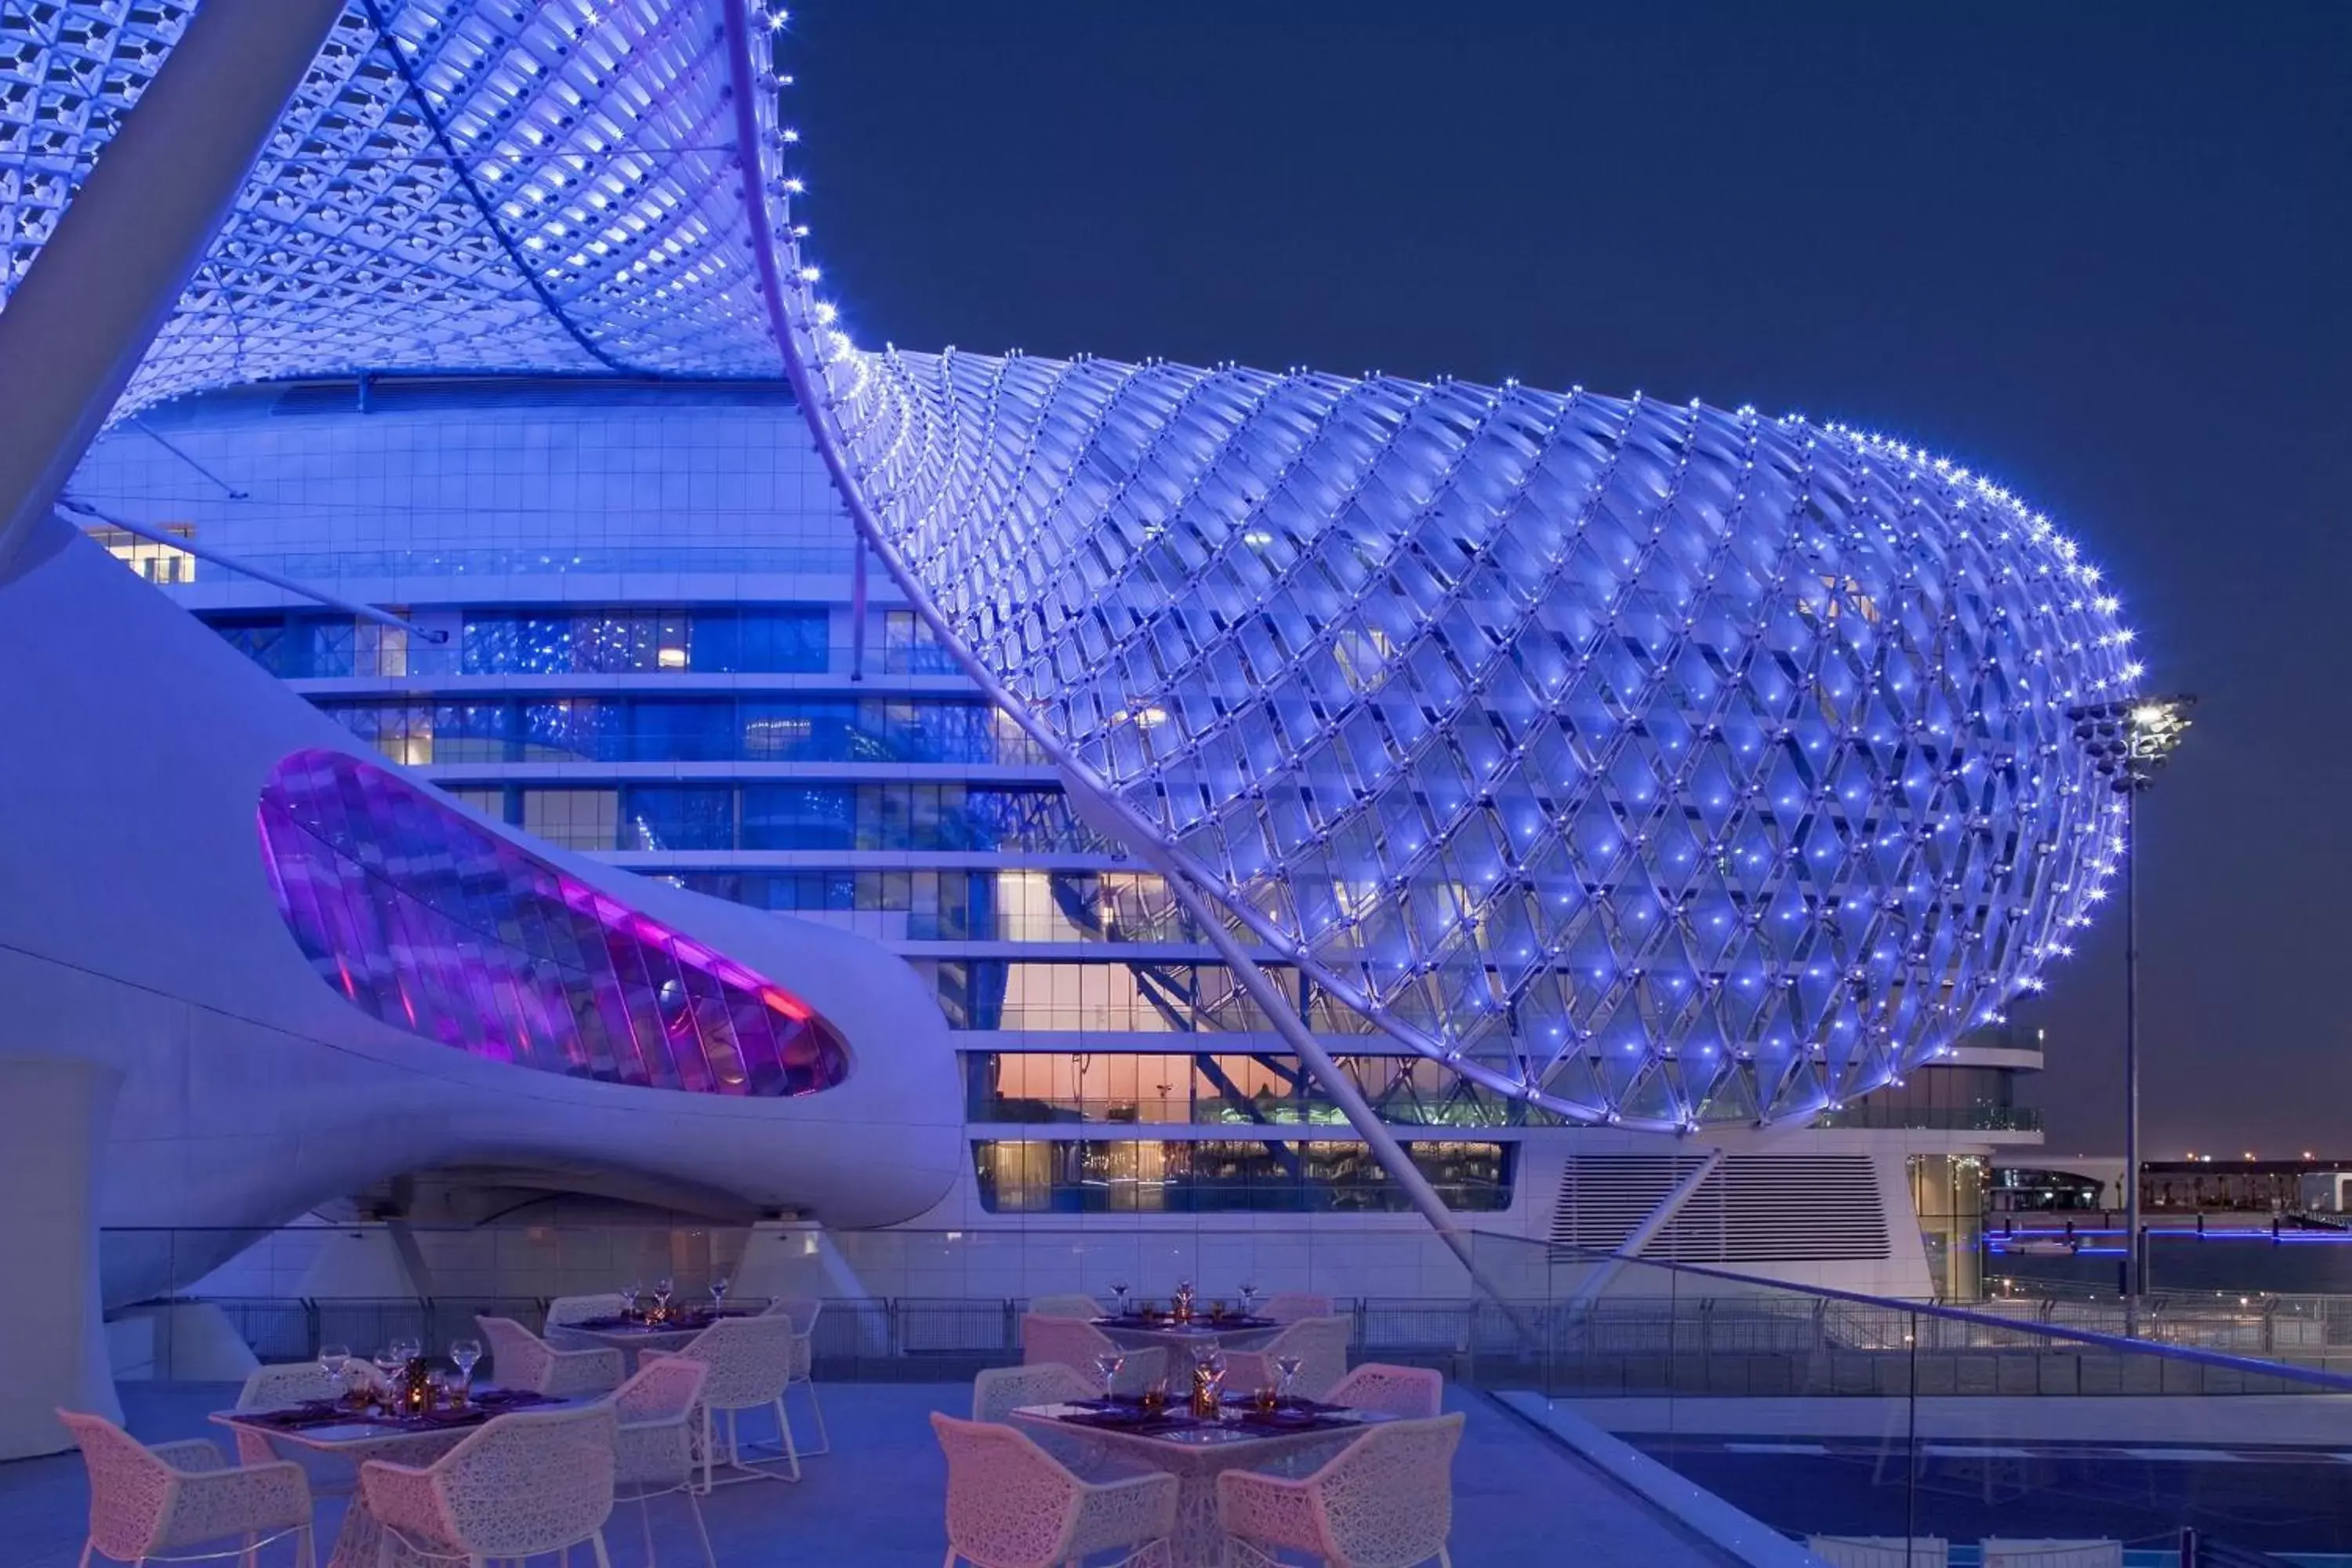 Property Building in W Abu Dhabi - Yas Island